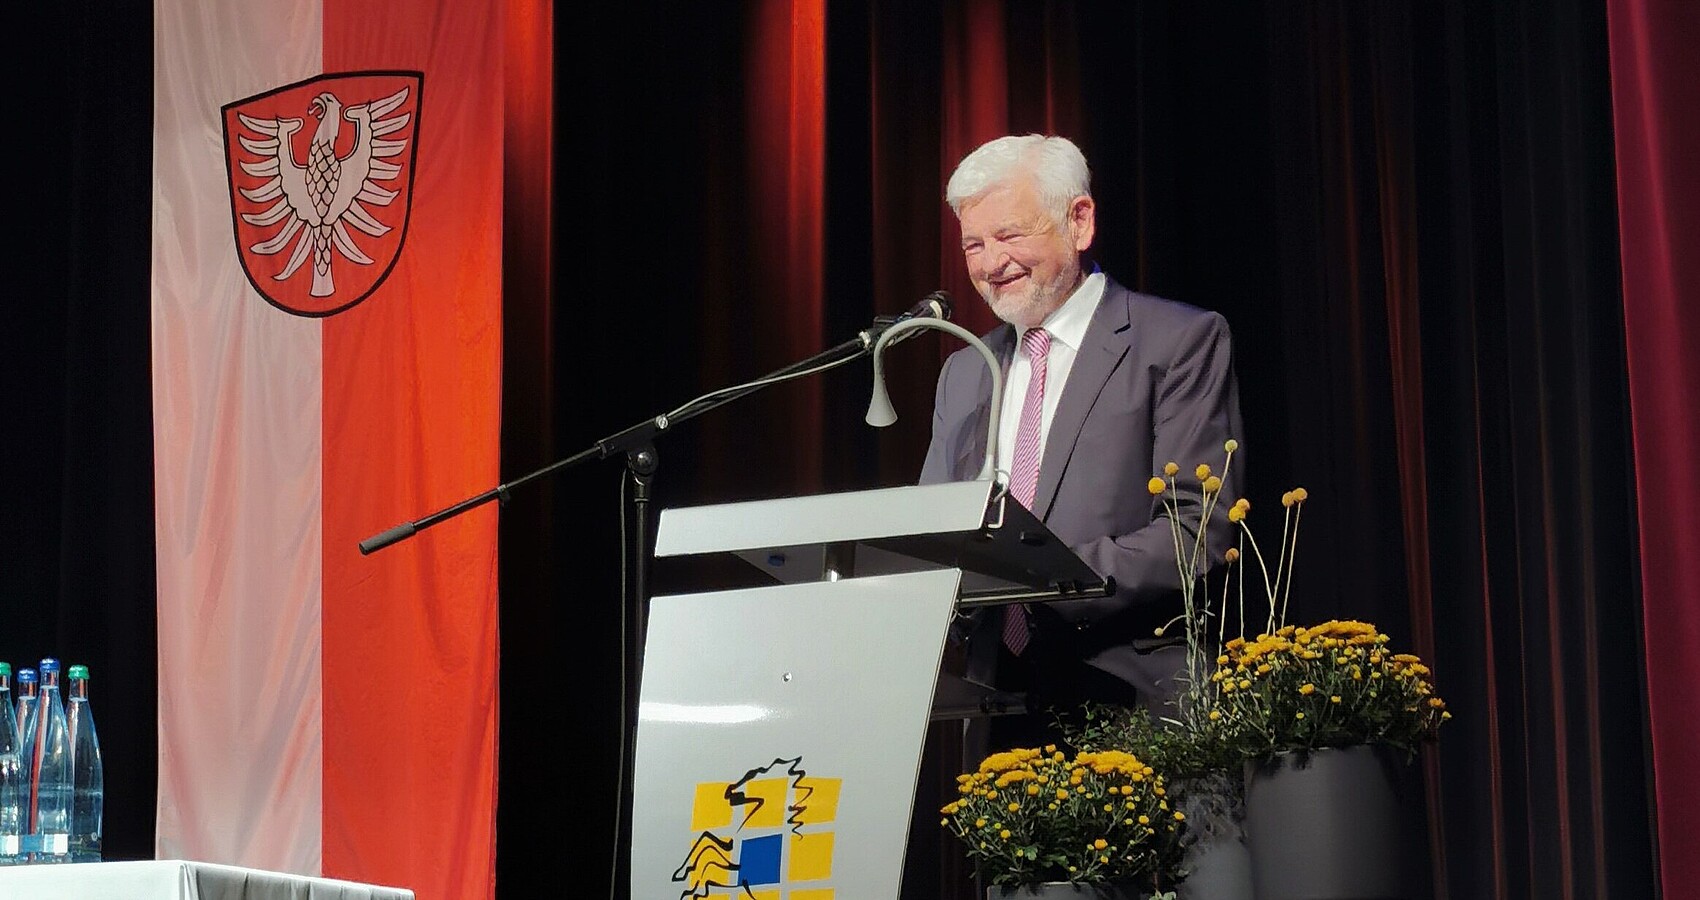 Regierungspräsident Wolfgang Reimer bedankte sich bei Landrat Detlef Piepenburg für die verlässliche und gute Zusammenarbeit.